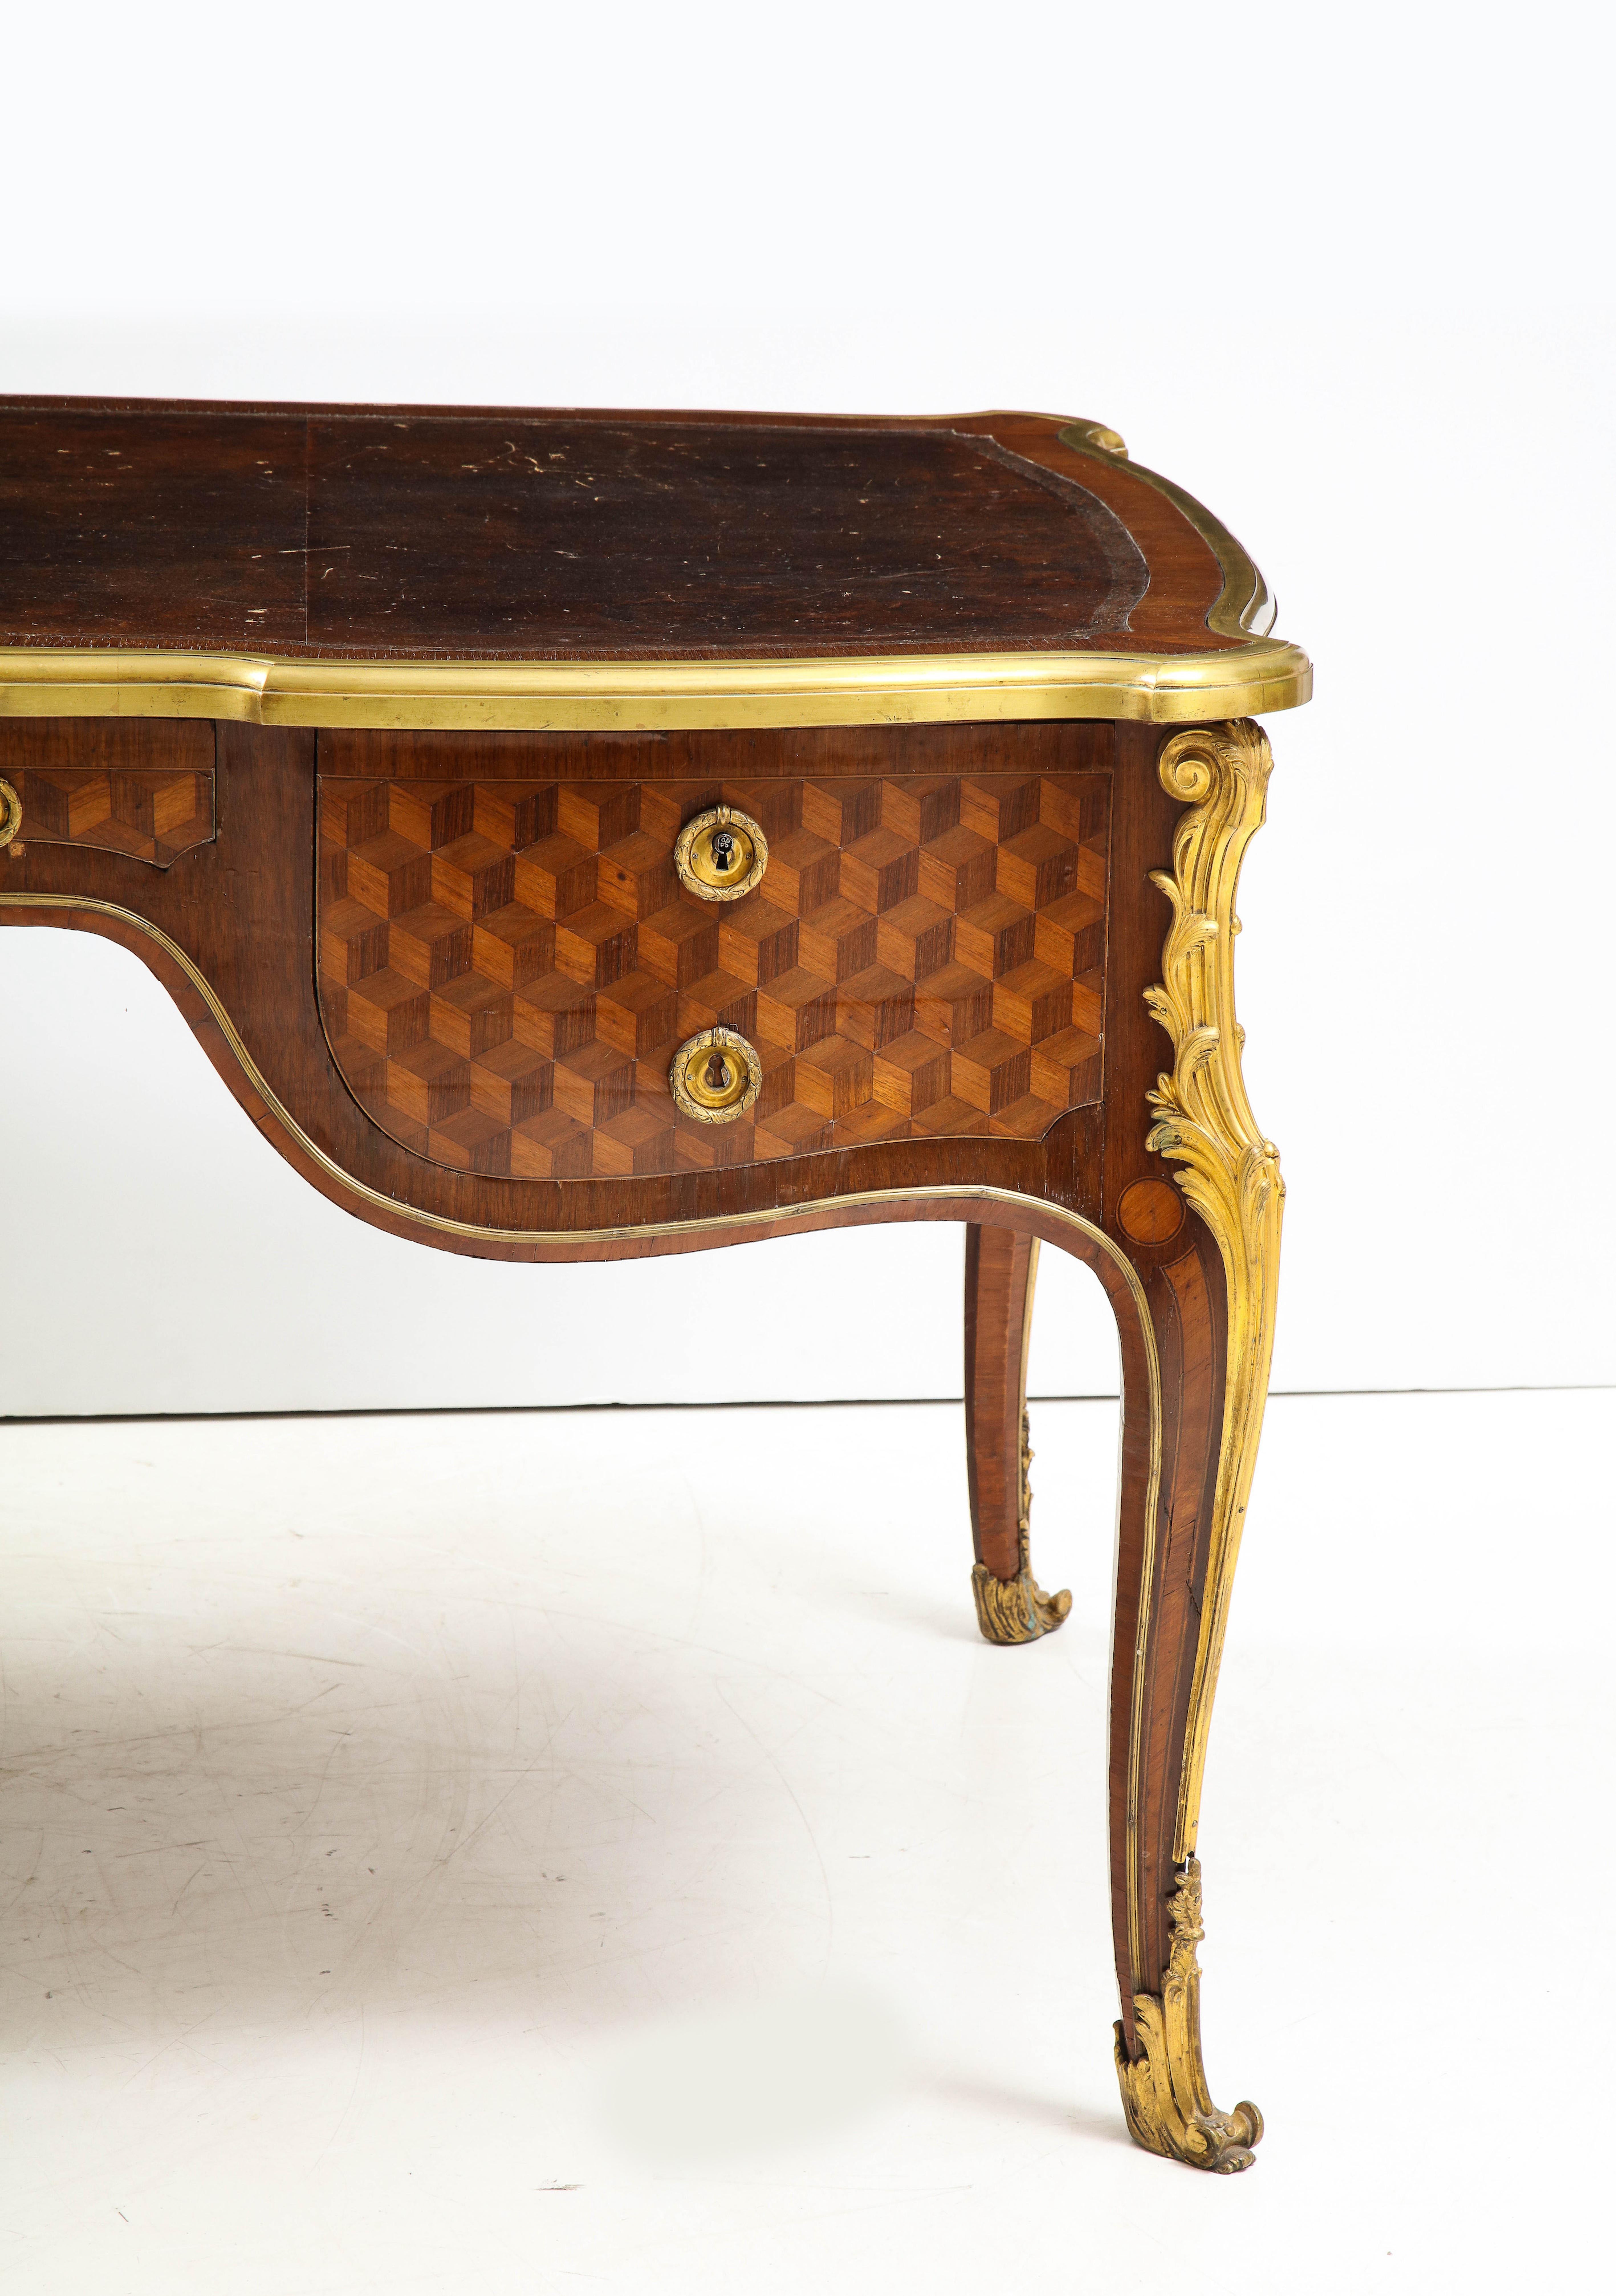 Ein schönes und wichtiges Bureau plat im Stil Louis XV, das François Linke (1855-1946) nach einem Modell von Jean François Oeben zugeschrieben wird. Typisch für die Arbeit von François Linke ist dieser Schreibtisch mit feinsten Intarsien auf einem